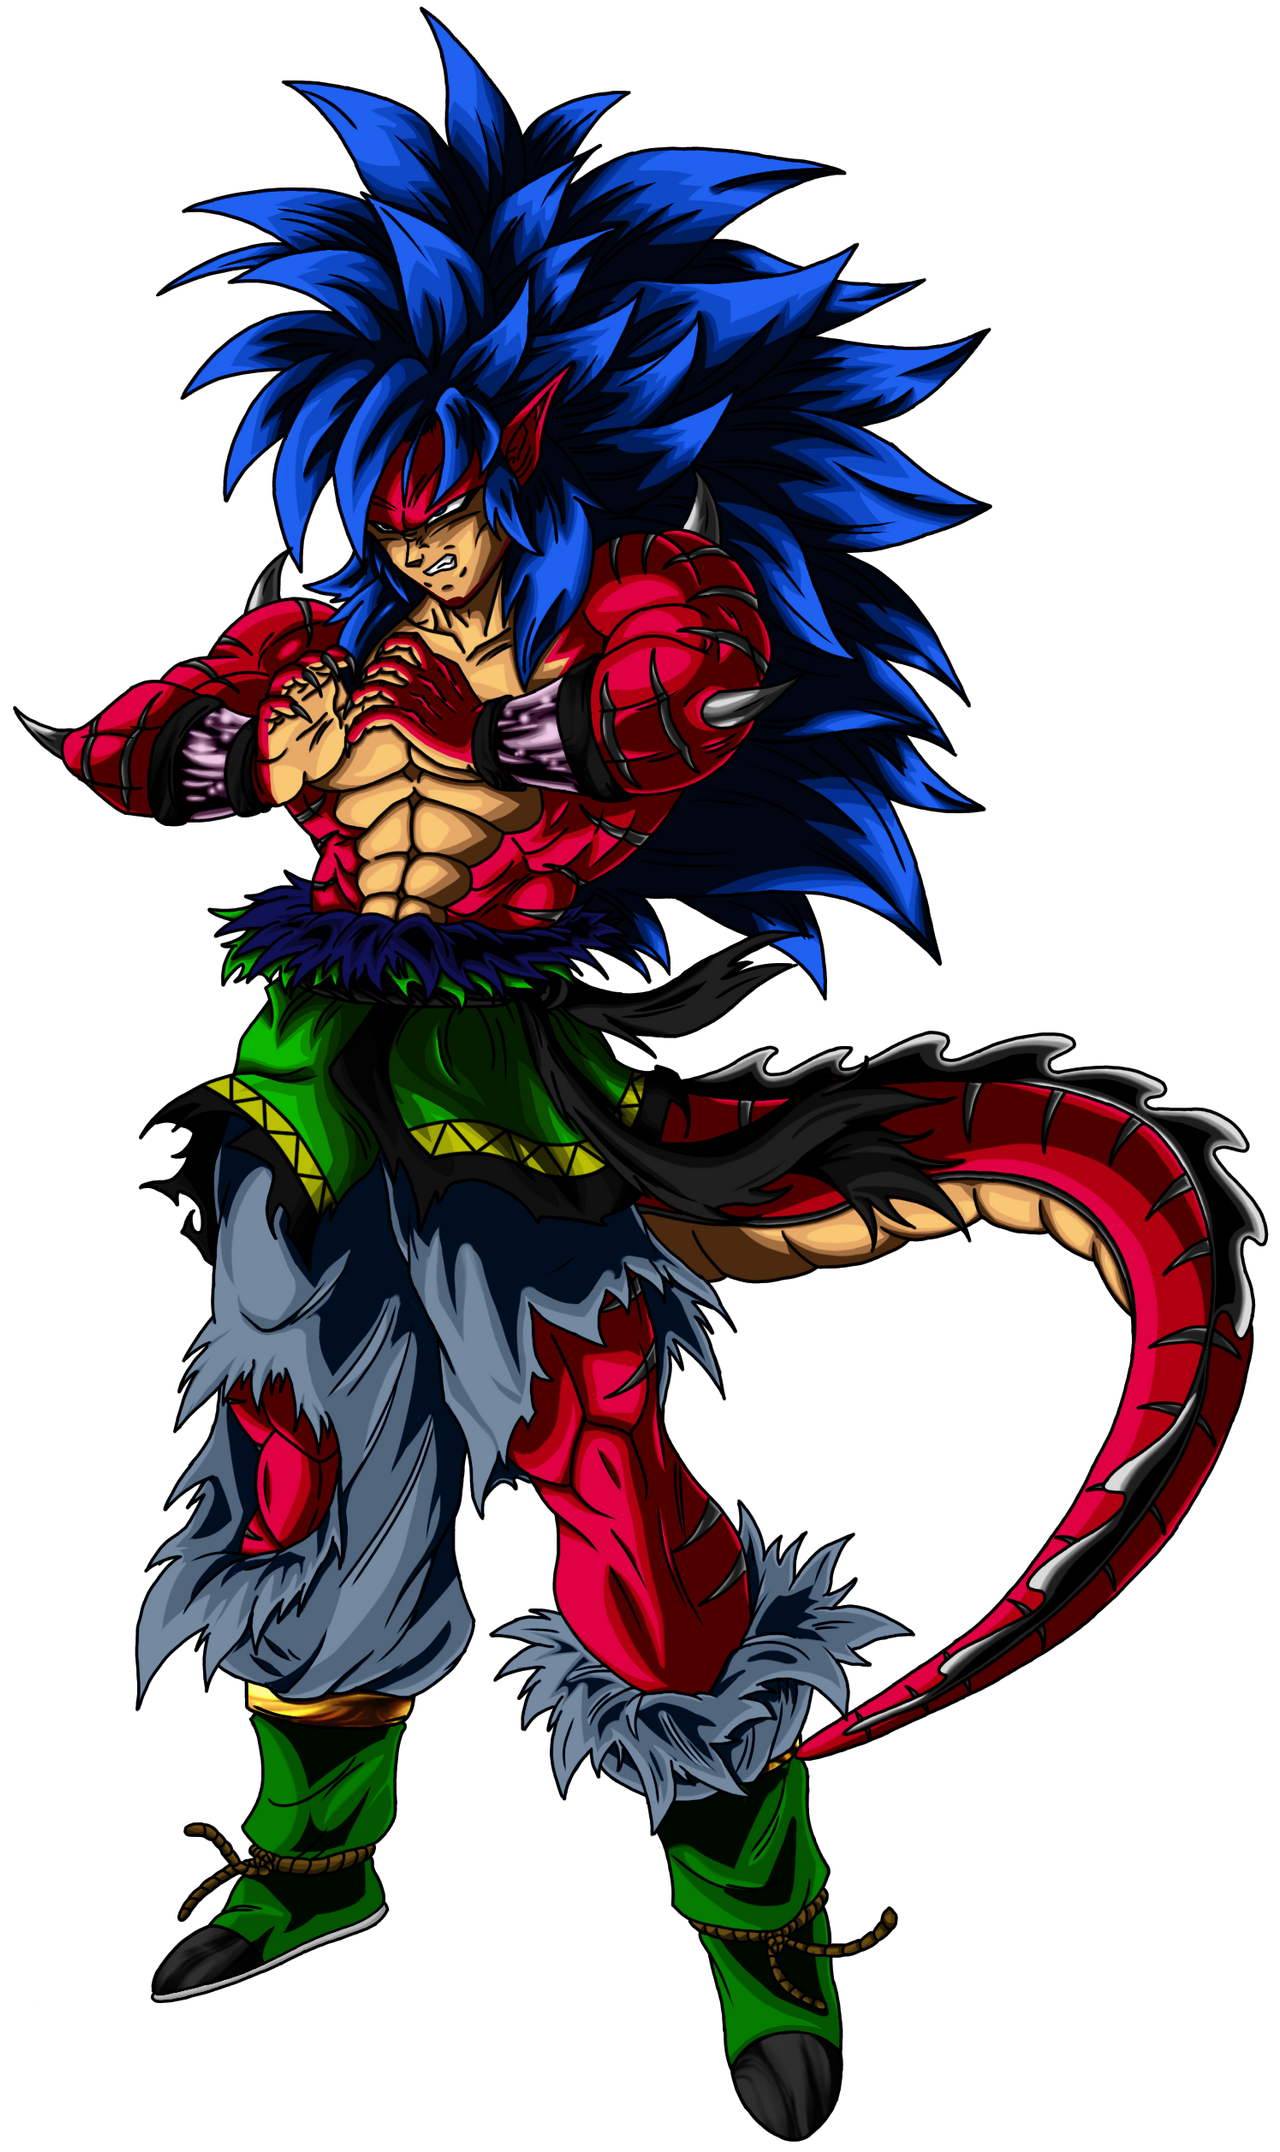 Goku AF - Super Saiyajin Blue 4 Evolution by SebaToledo on DeviantArt